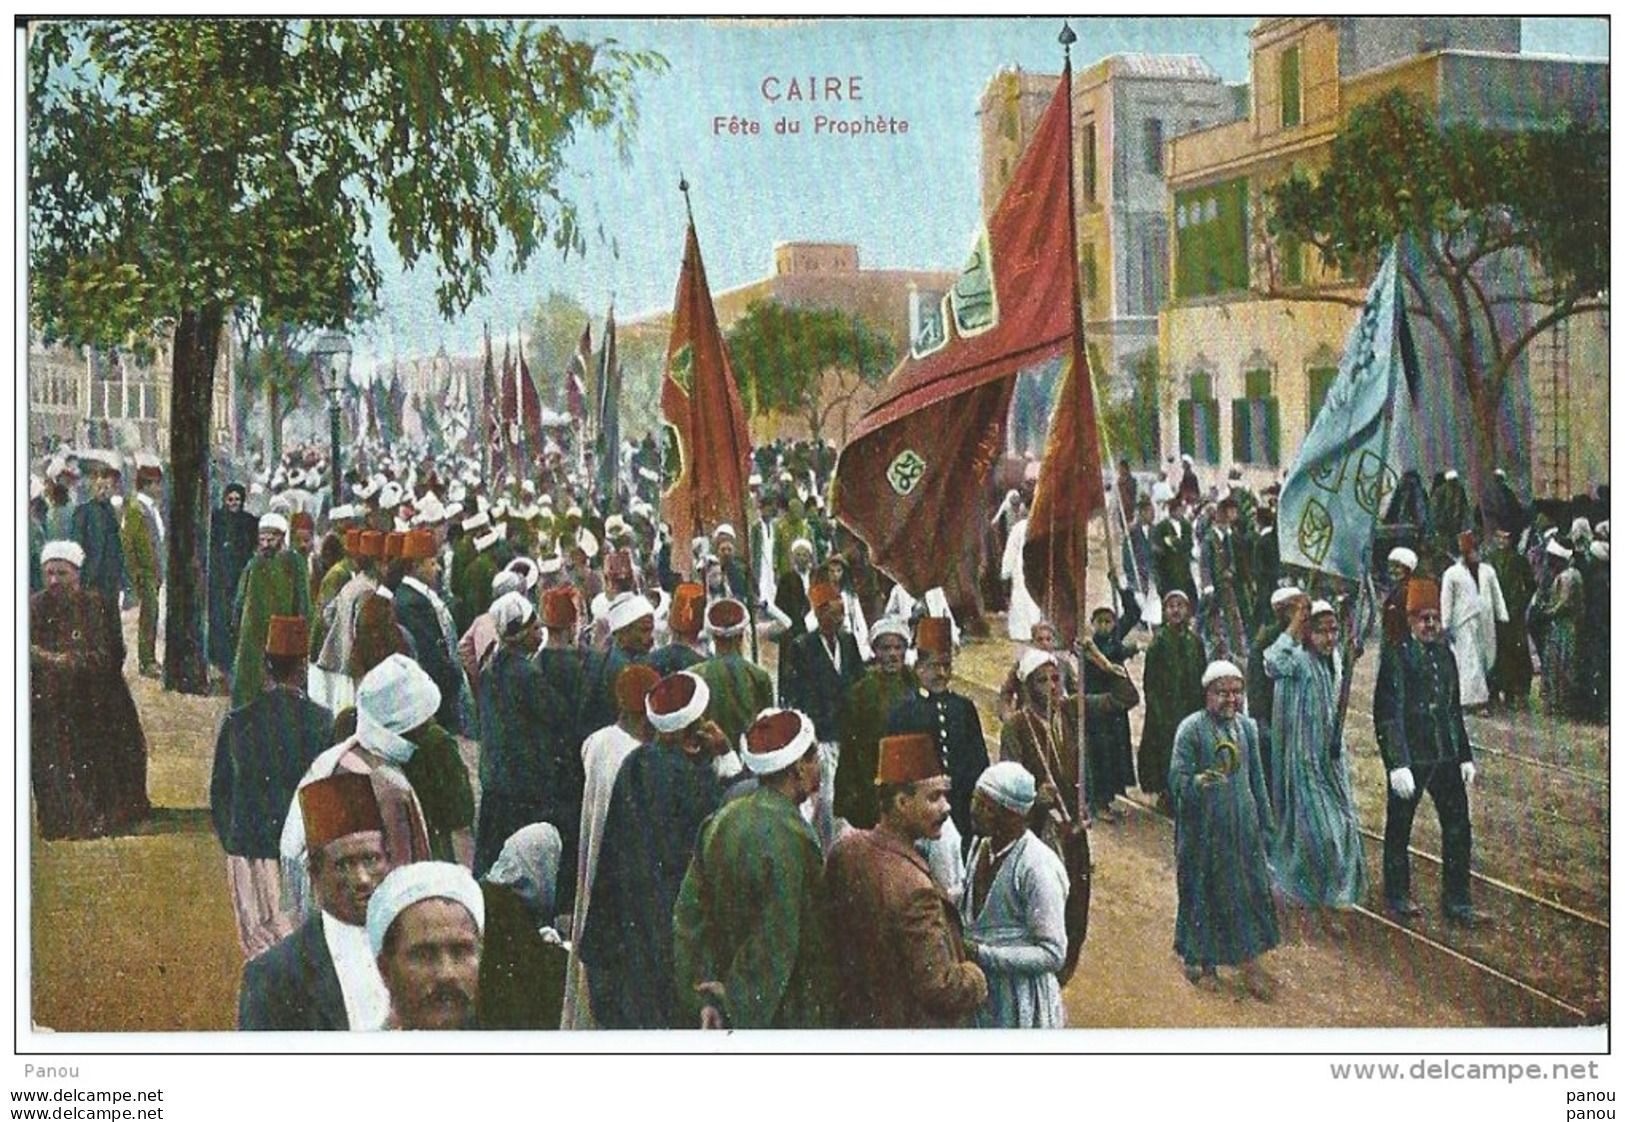 EGYPTE EGYPT CAIRE CAIRO FETE DU PROPHETE - Islam